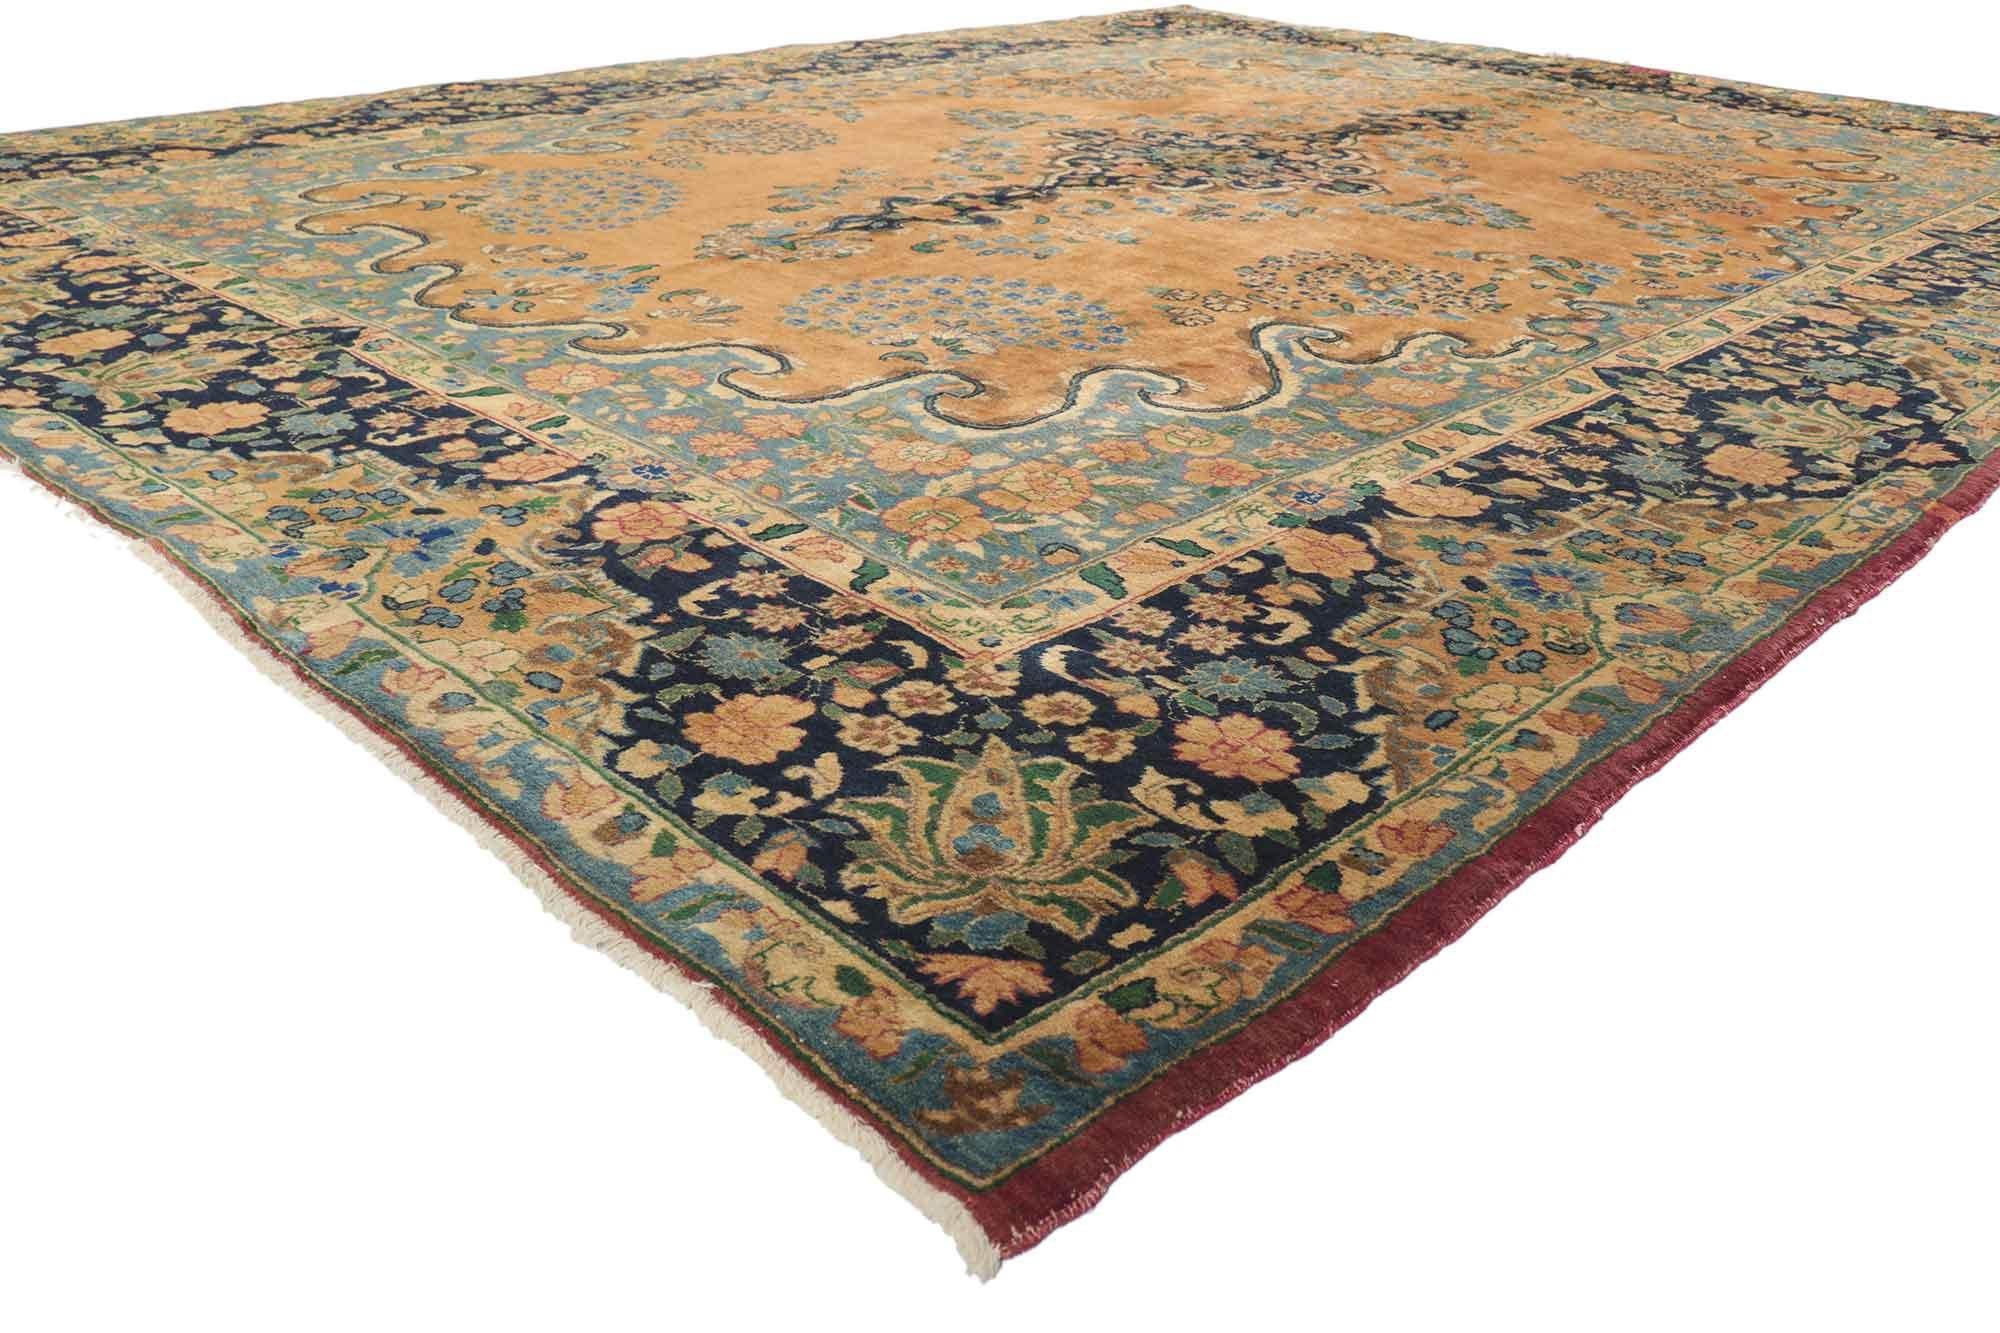 76324 Tapis Persan Vintage Mashhad avec style Arabesque Baroque Régence. Ce tapis Persan vintage Mashhad en laine nouée à la main présente un médaillon typique de Mashhad parsemé de petits bouquets fleuris sur un champ abrasé de couleur caramel. Le